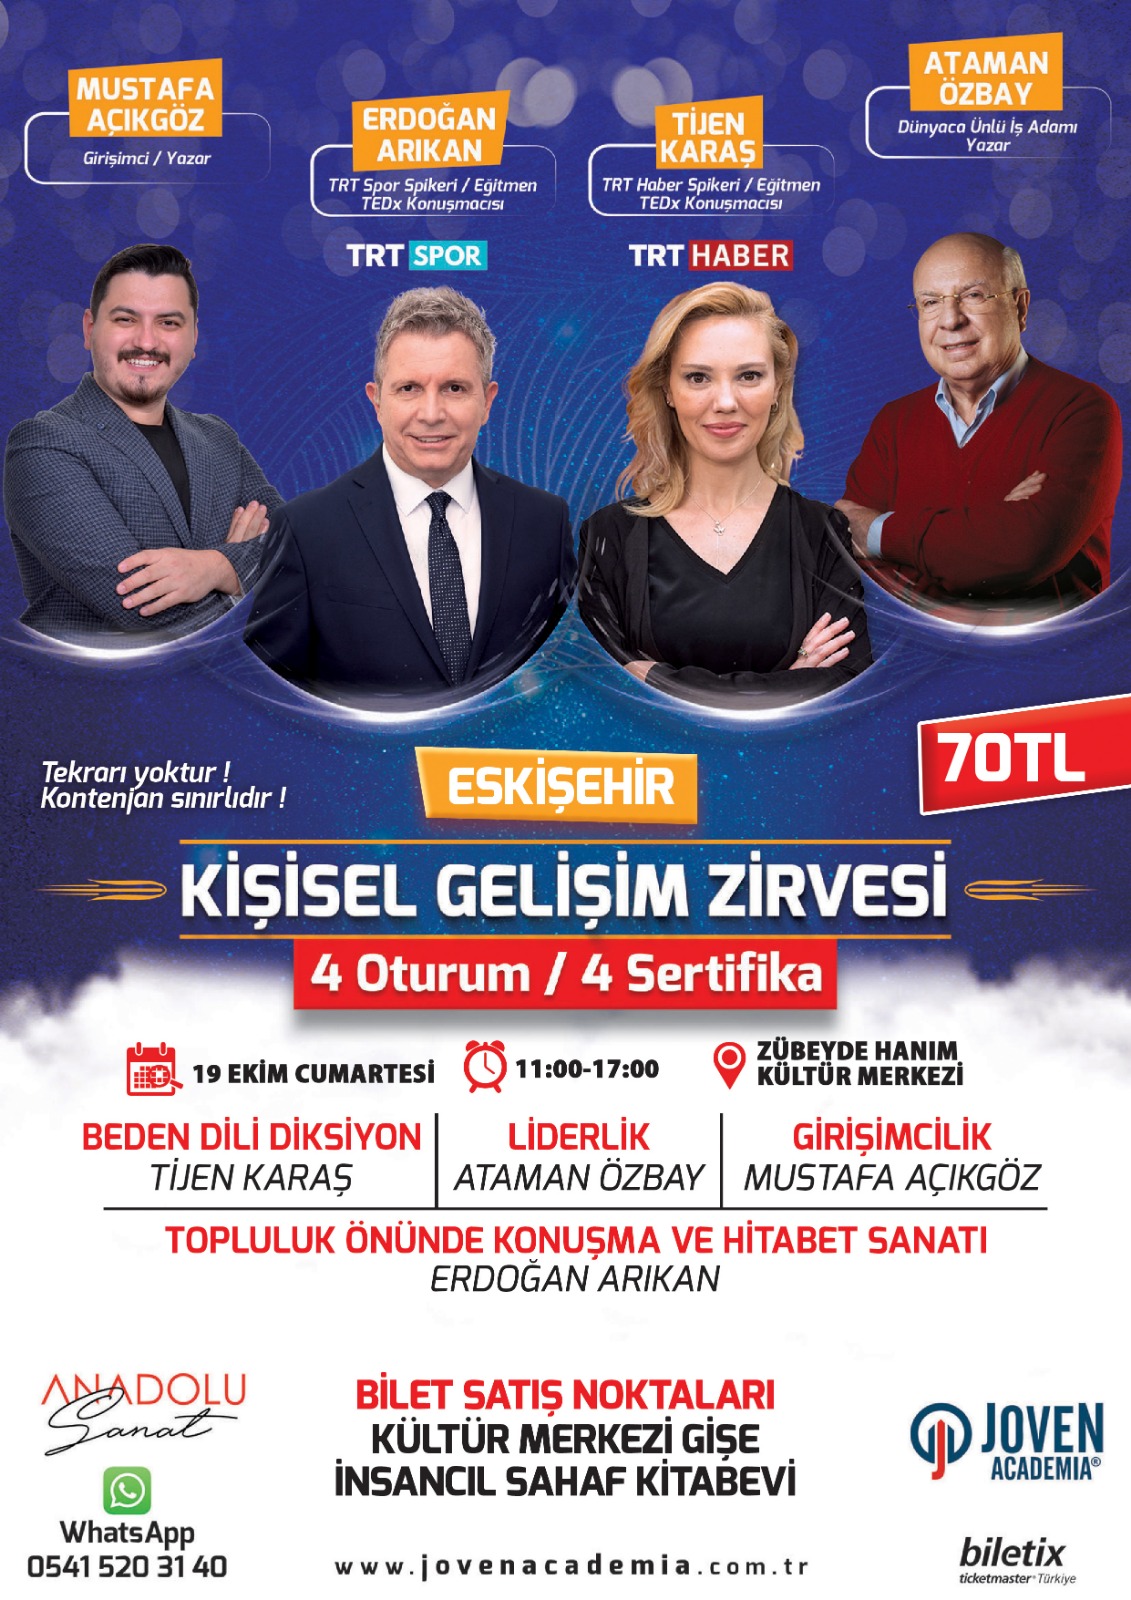 Eskişehir Kişisel Gelişim Zirvesi ( 19 Ekim 2019 )